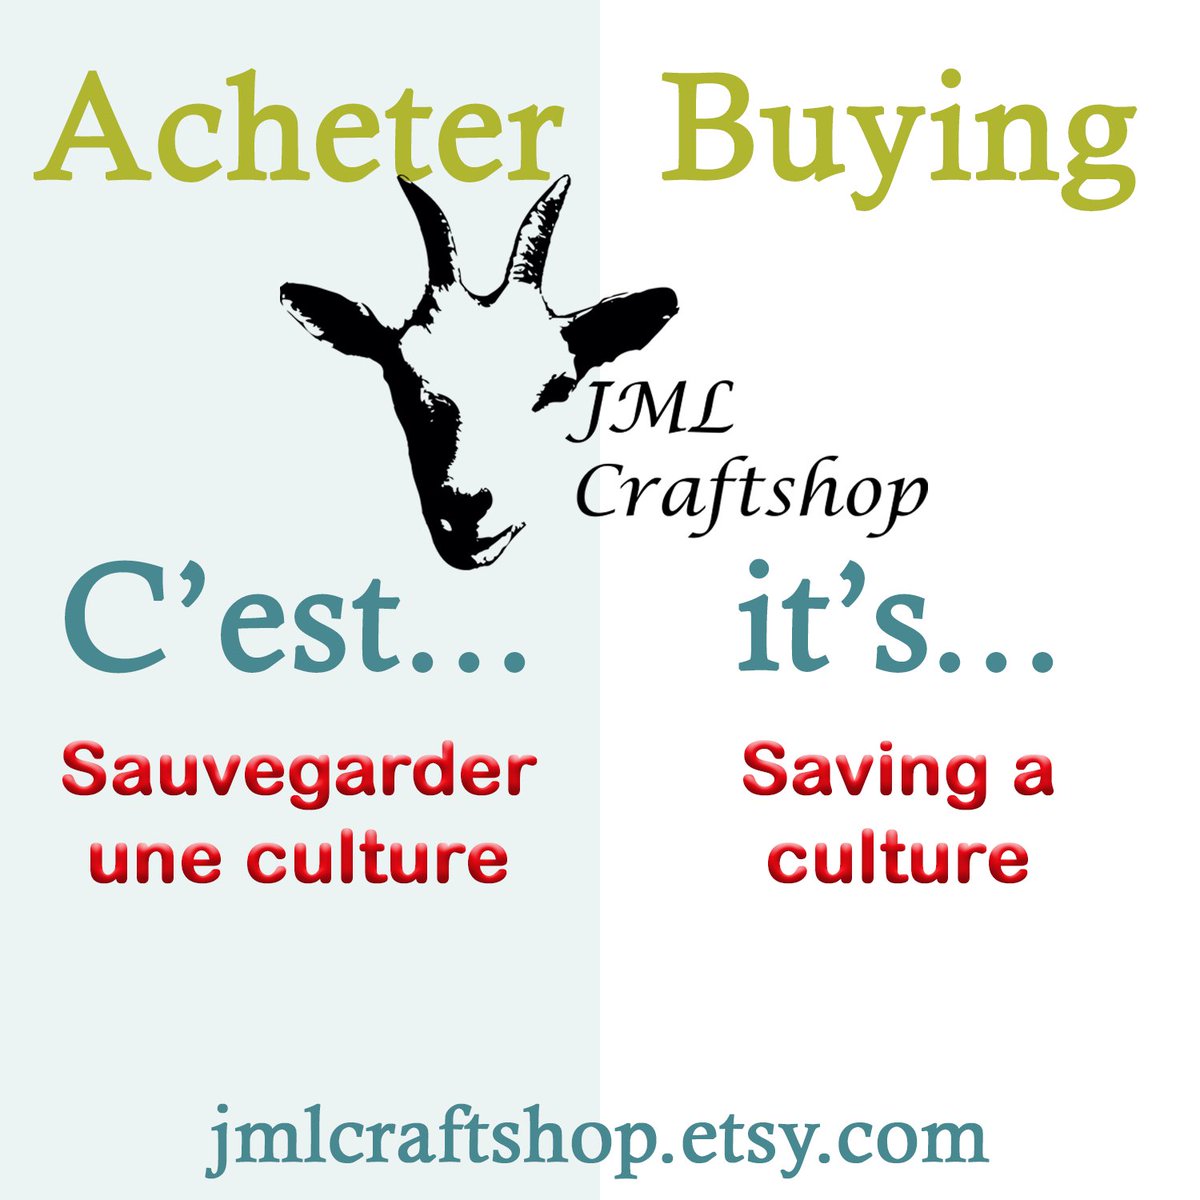 Sauvez JML Craftshop! Save JMl Craftshop! jmlcraftshop.etsy.com #etsy #etsyshop #etsyfinds #etsycanada #etsystore #clothing #leggings #shirts